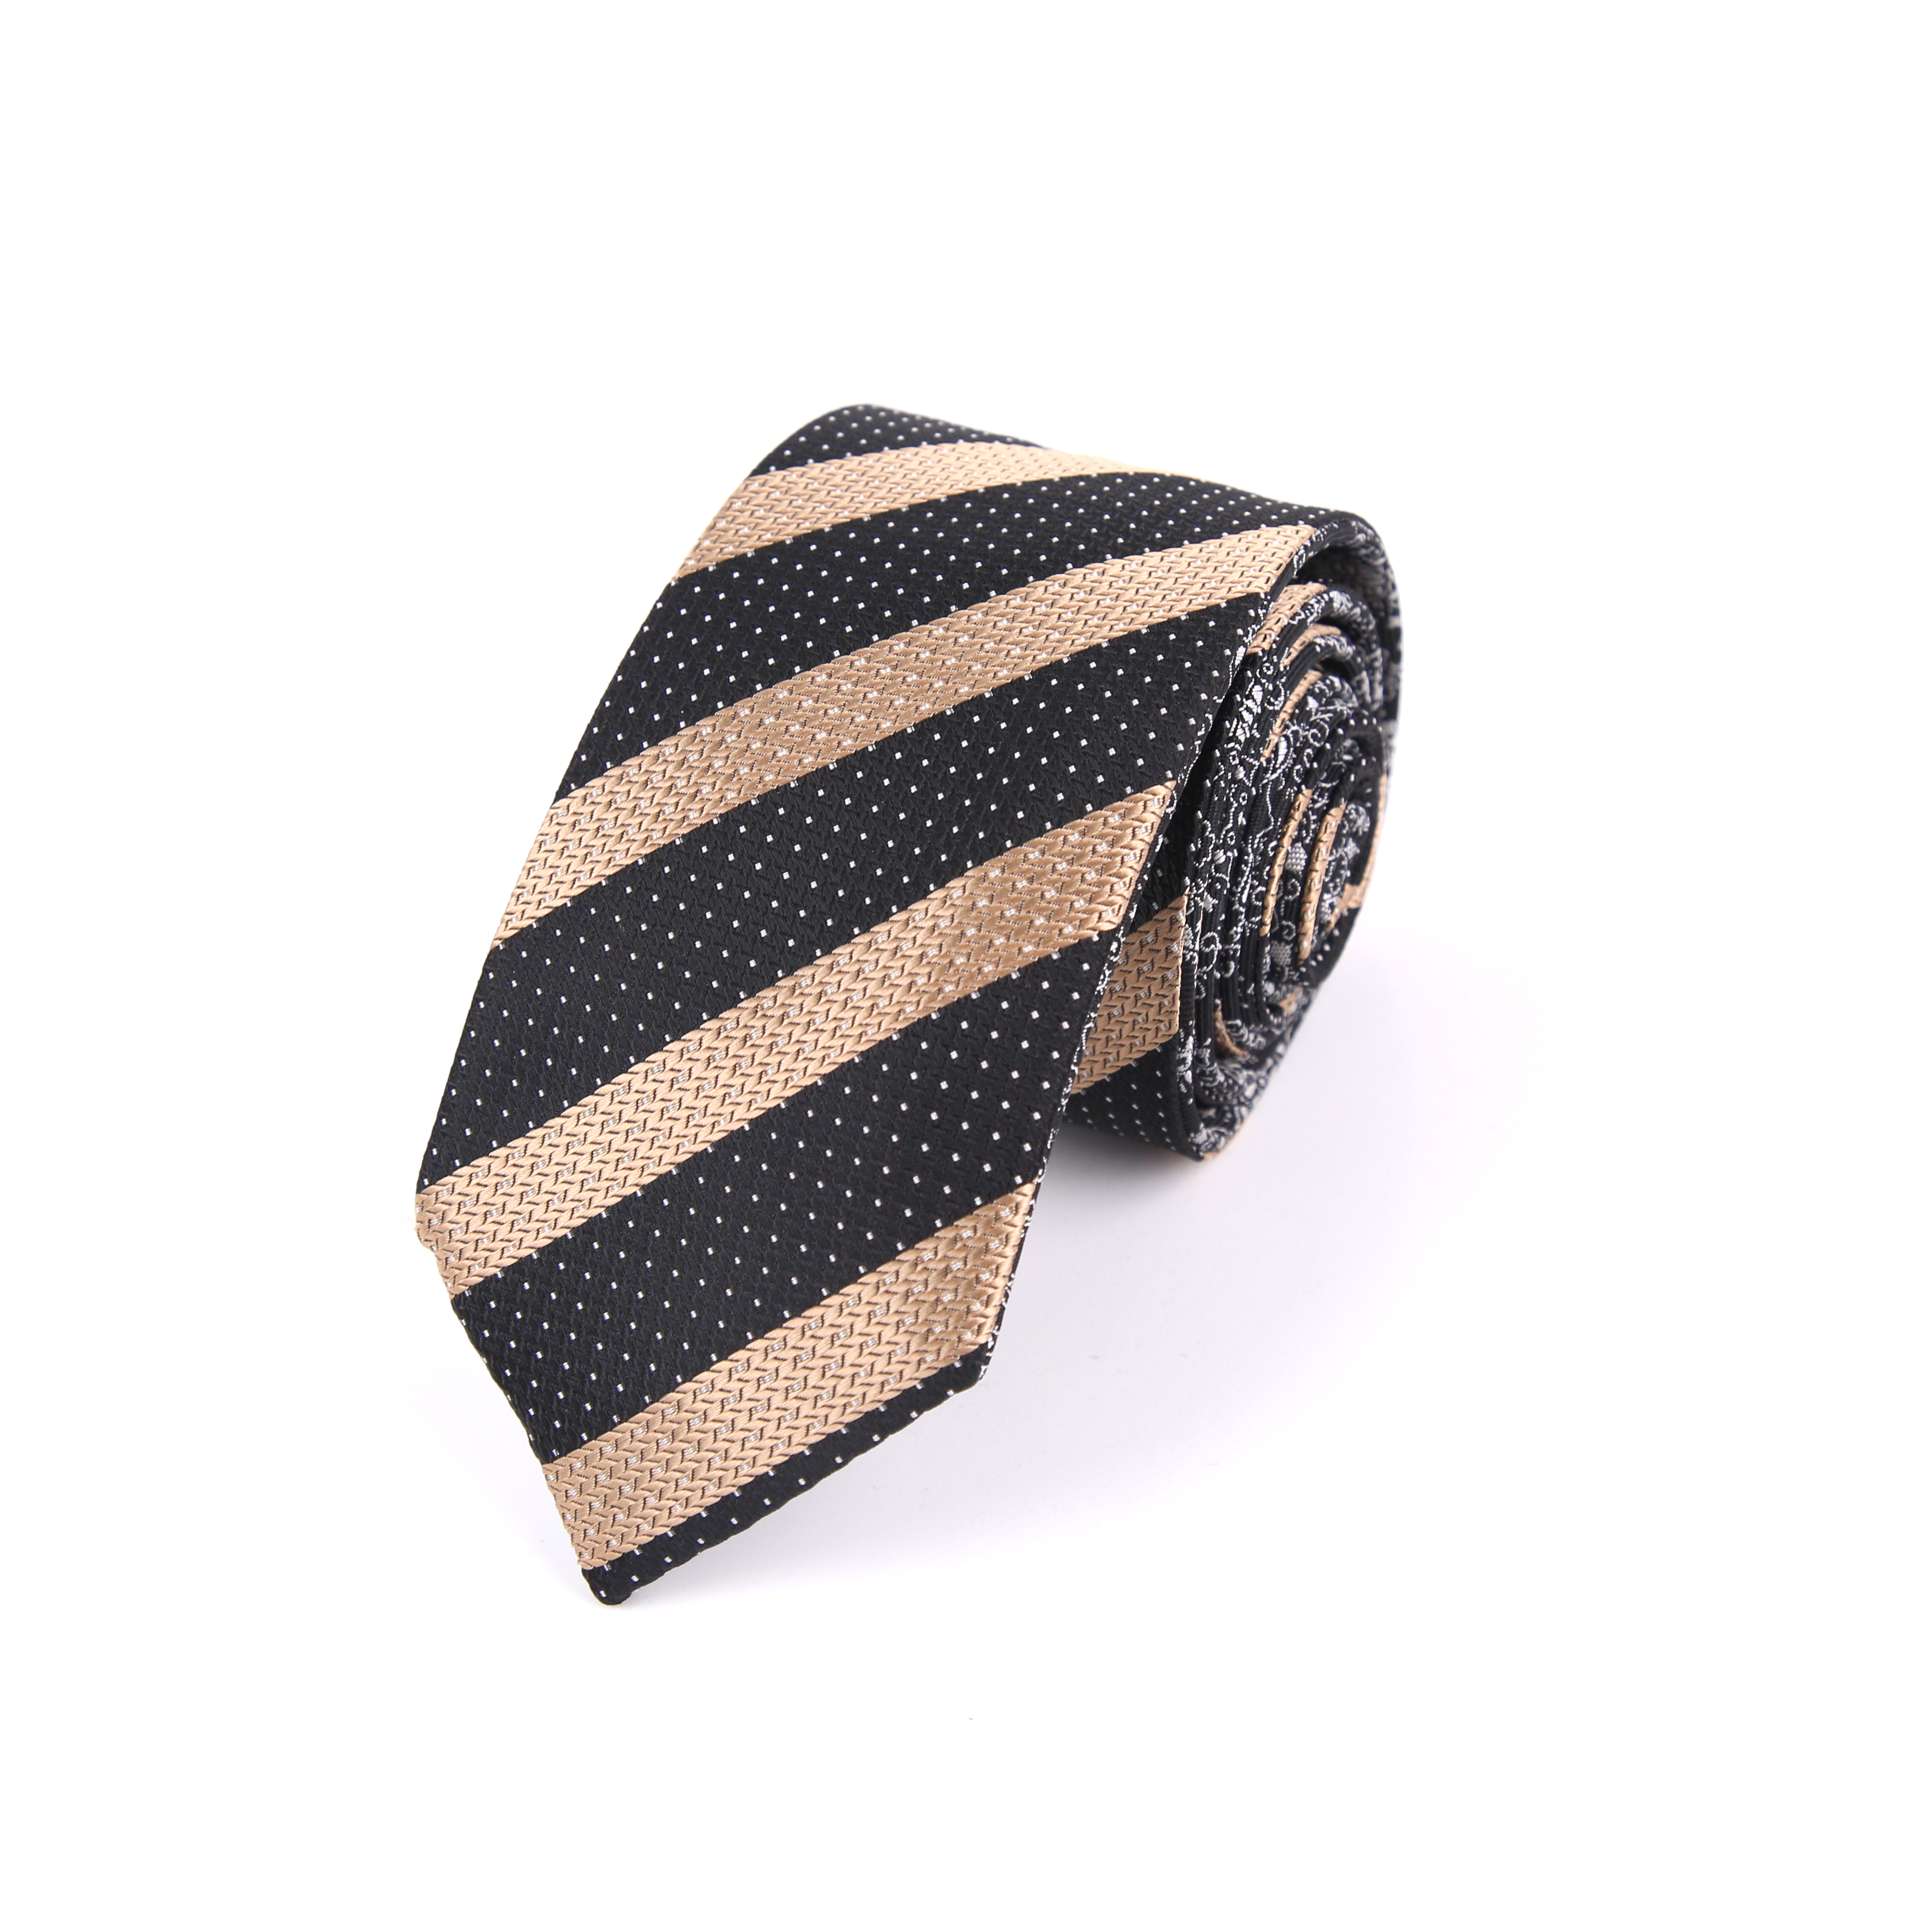 厂家直供 职业正装双面领带服饰穿搭配件商务时尚衬衫男士领带图